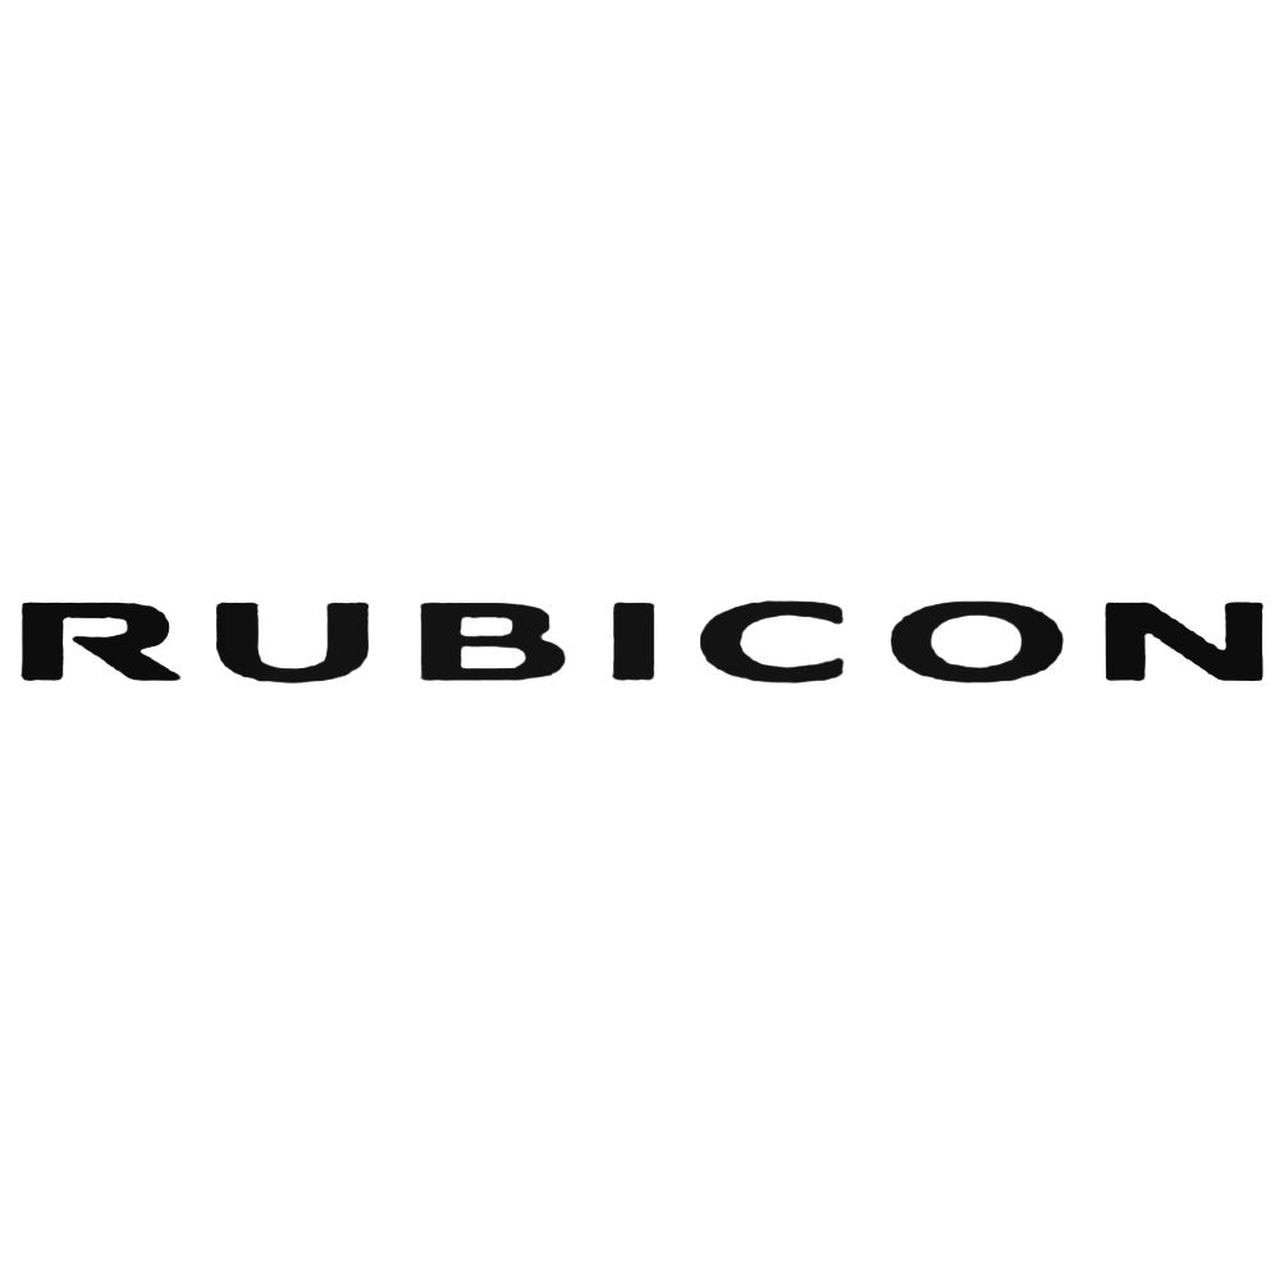 Rubicon Logo - Jeep Rubicon Logo Decal Sticker